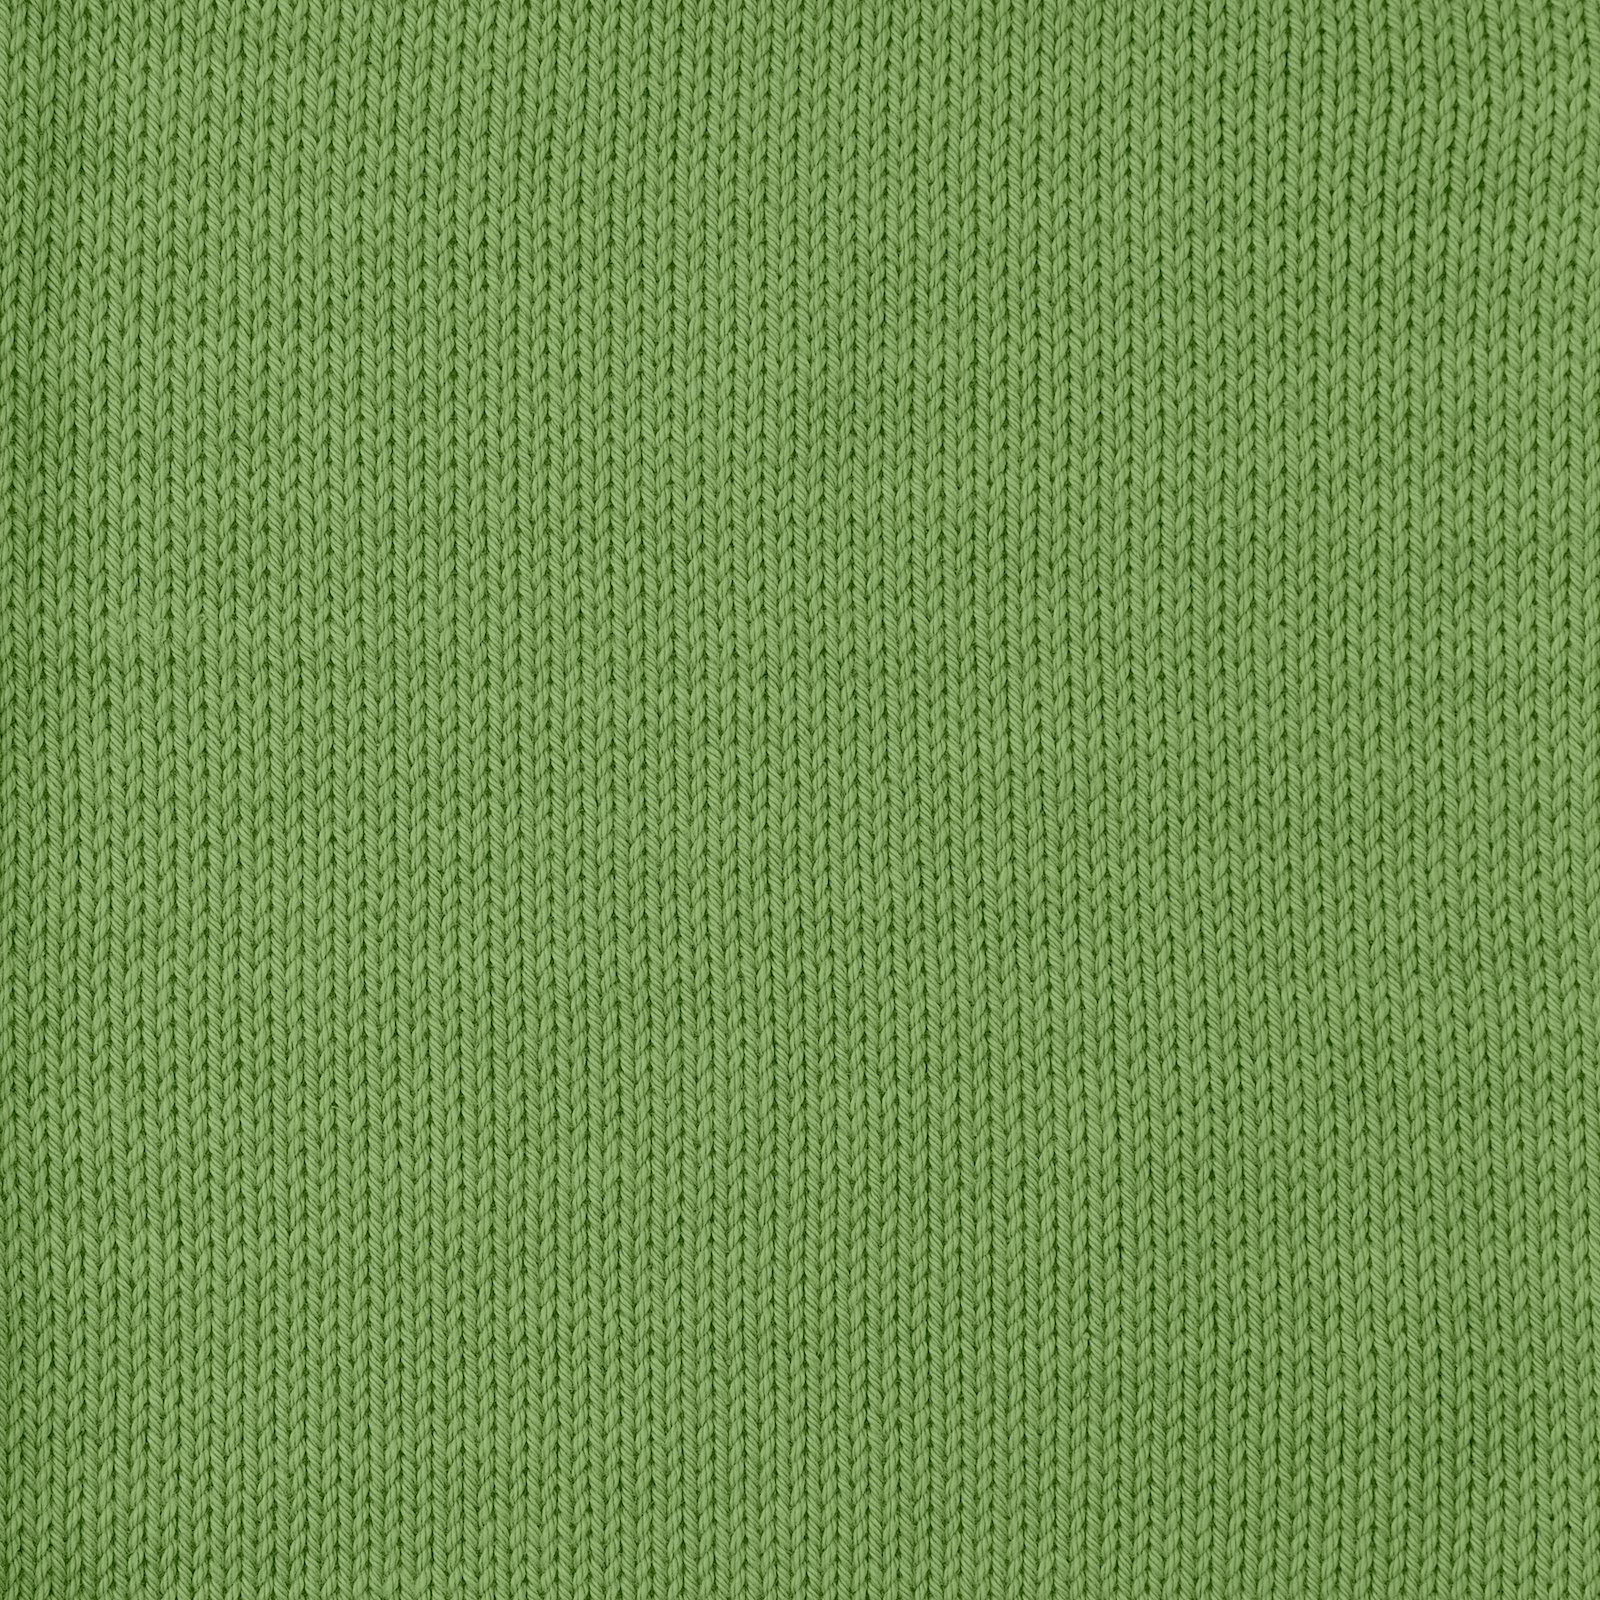 FRAYA, 100% cotton 8/4  yarn  "Colourful", grass green 90060076_sskit